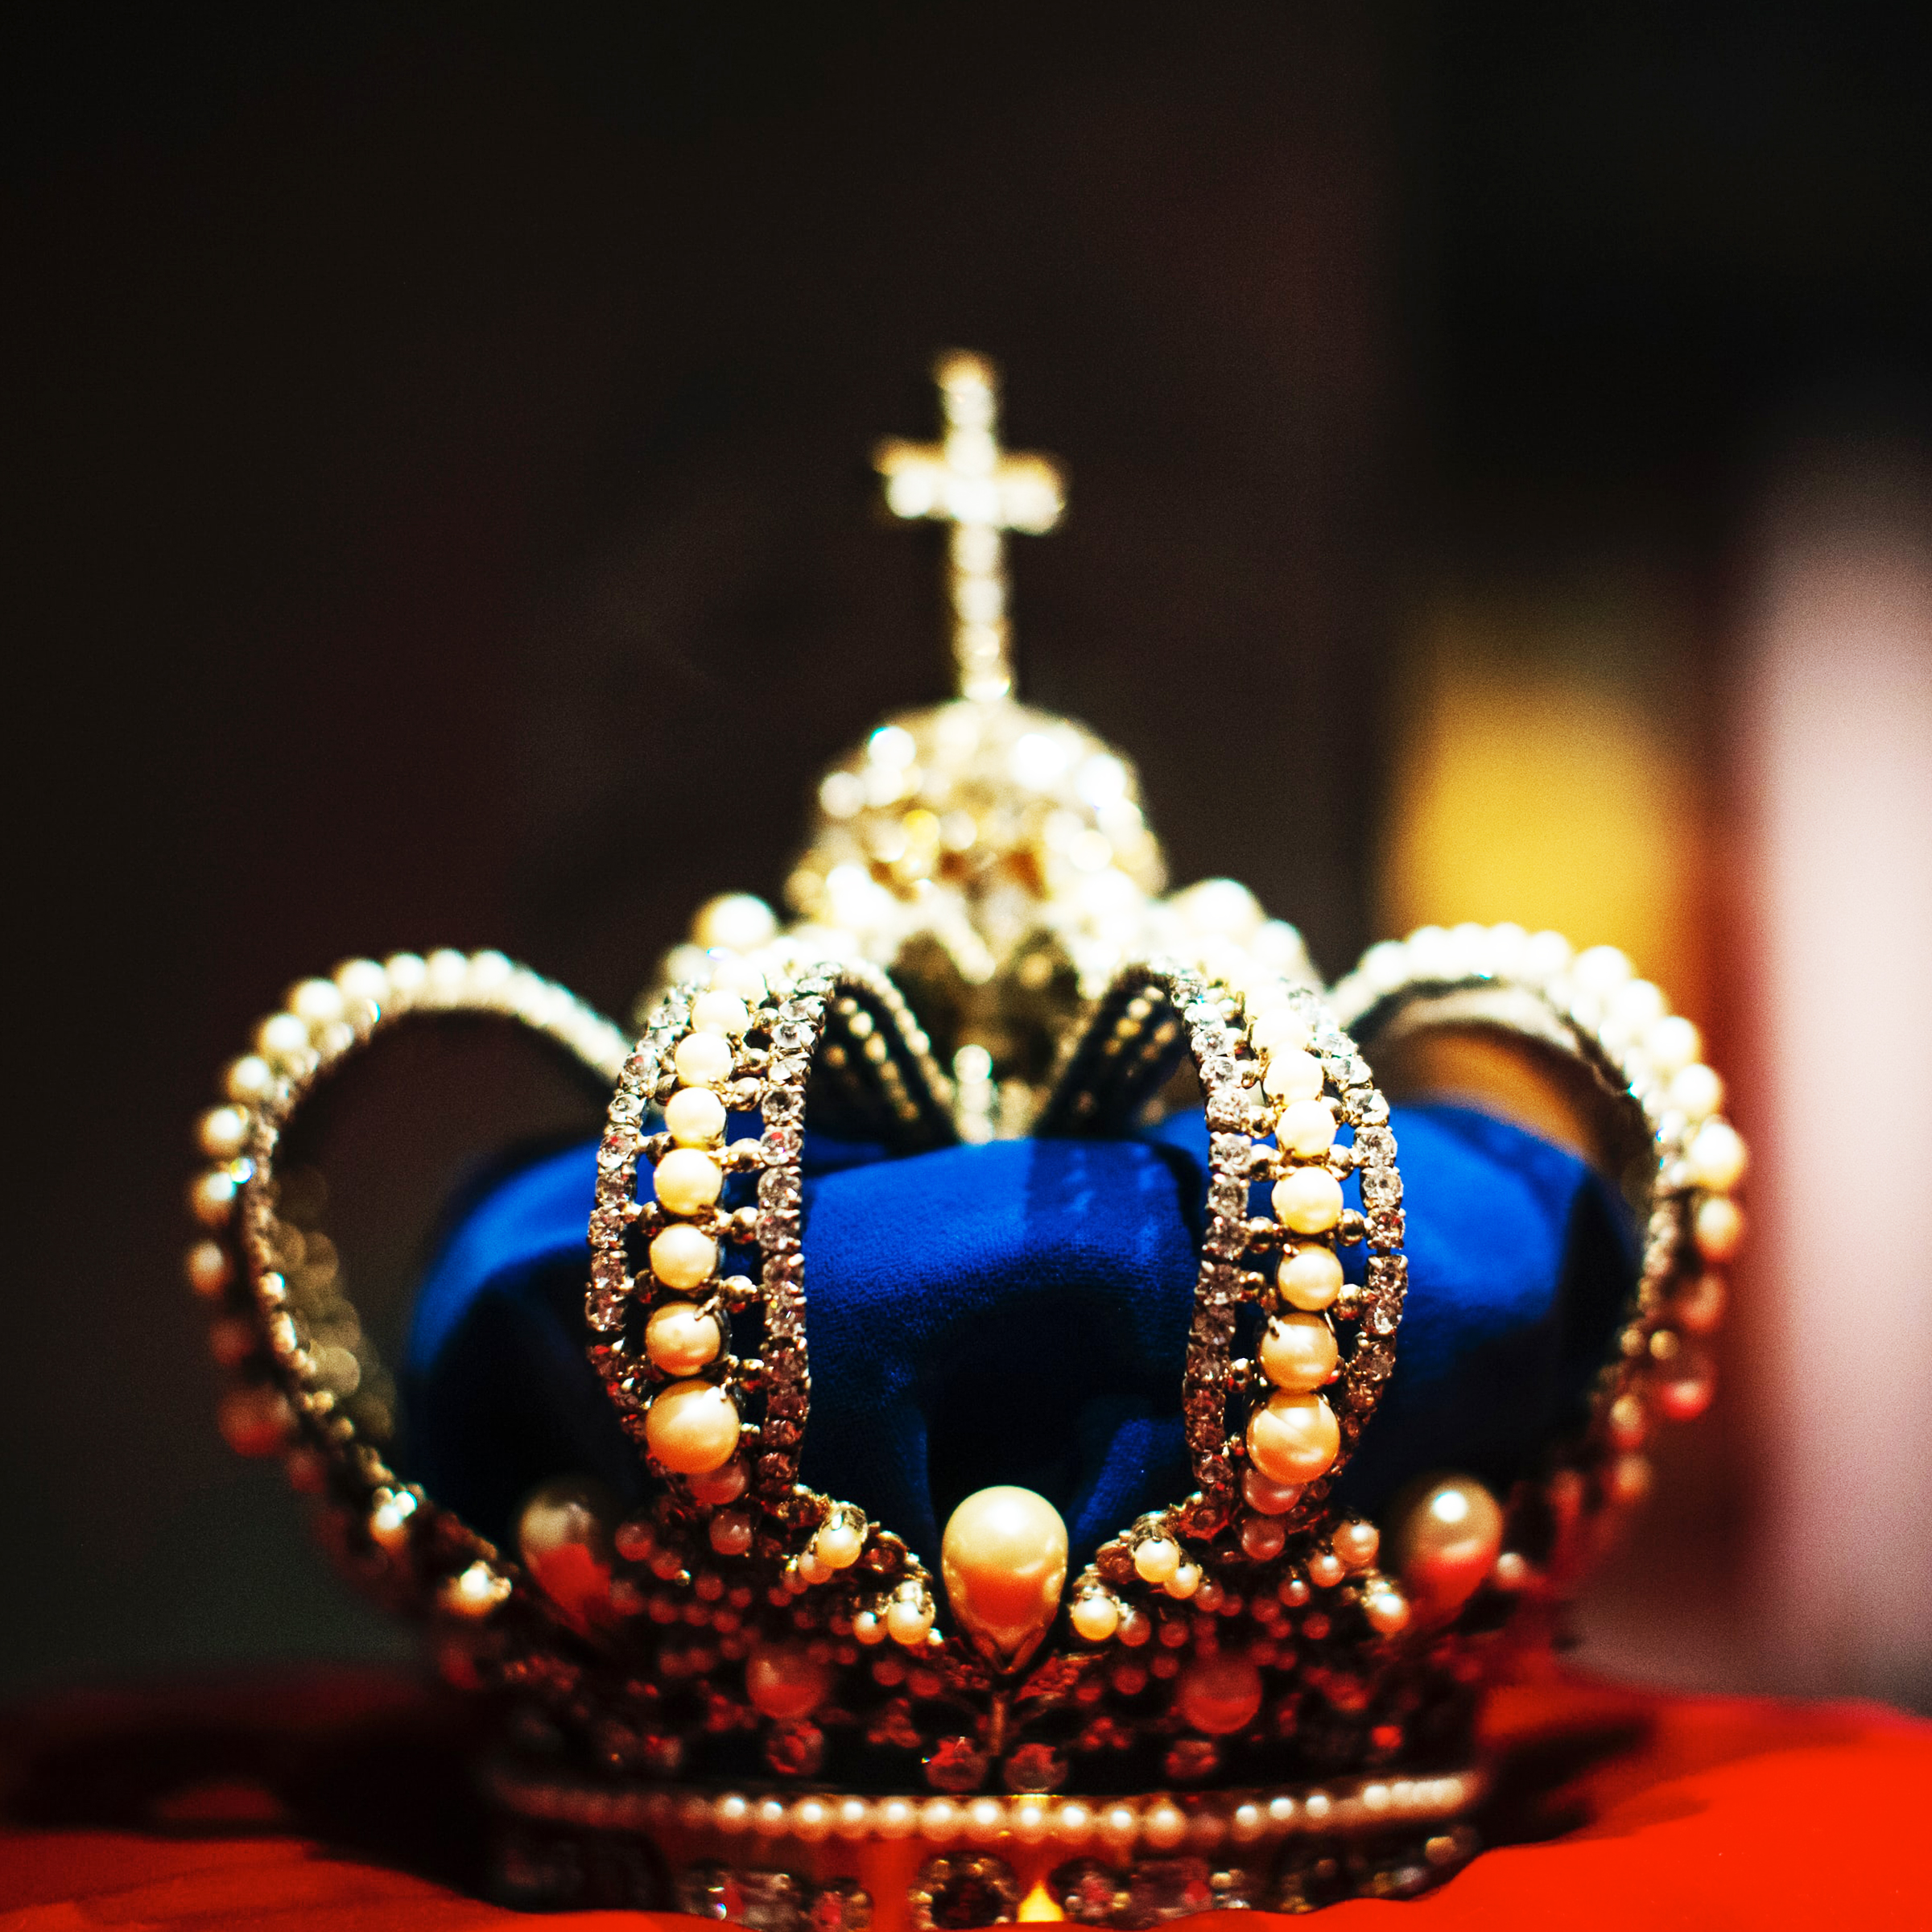 La couronne : 70 ans de règne